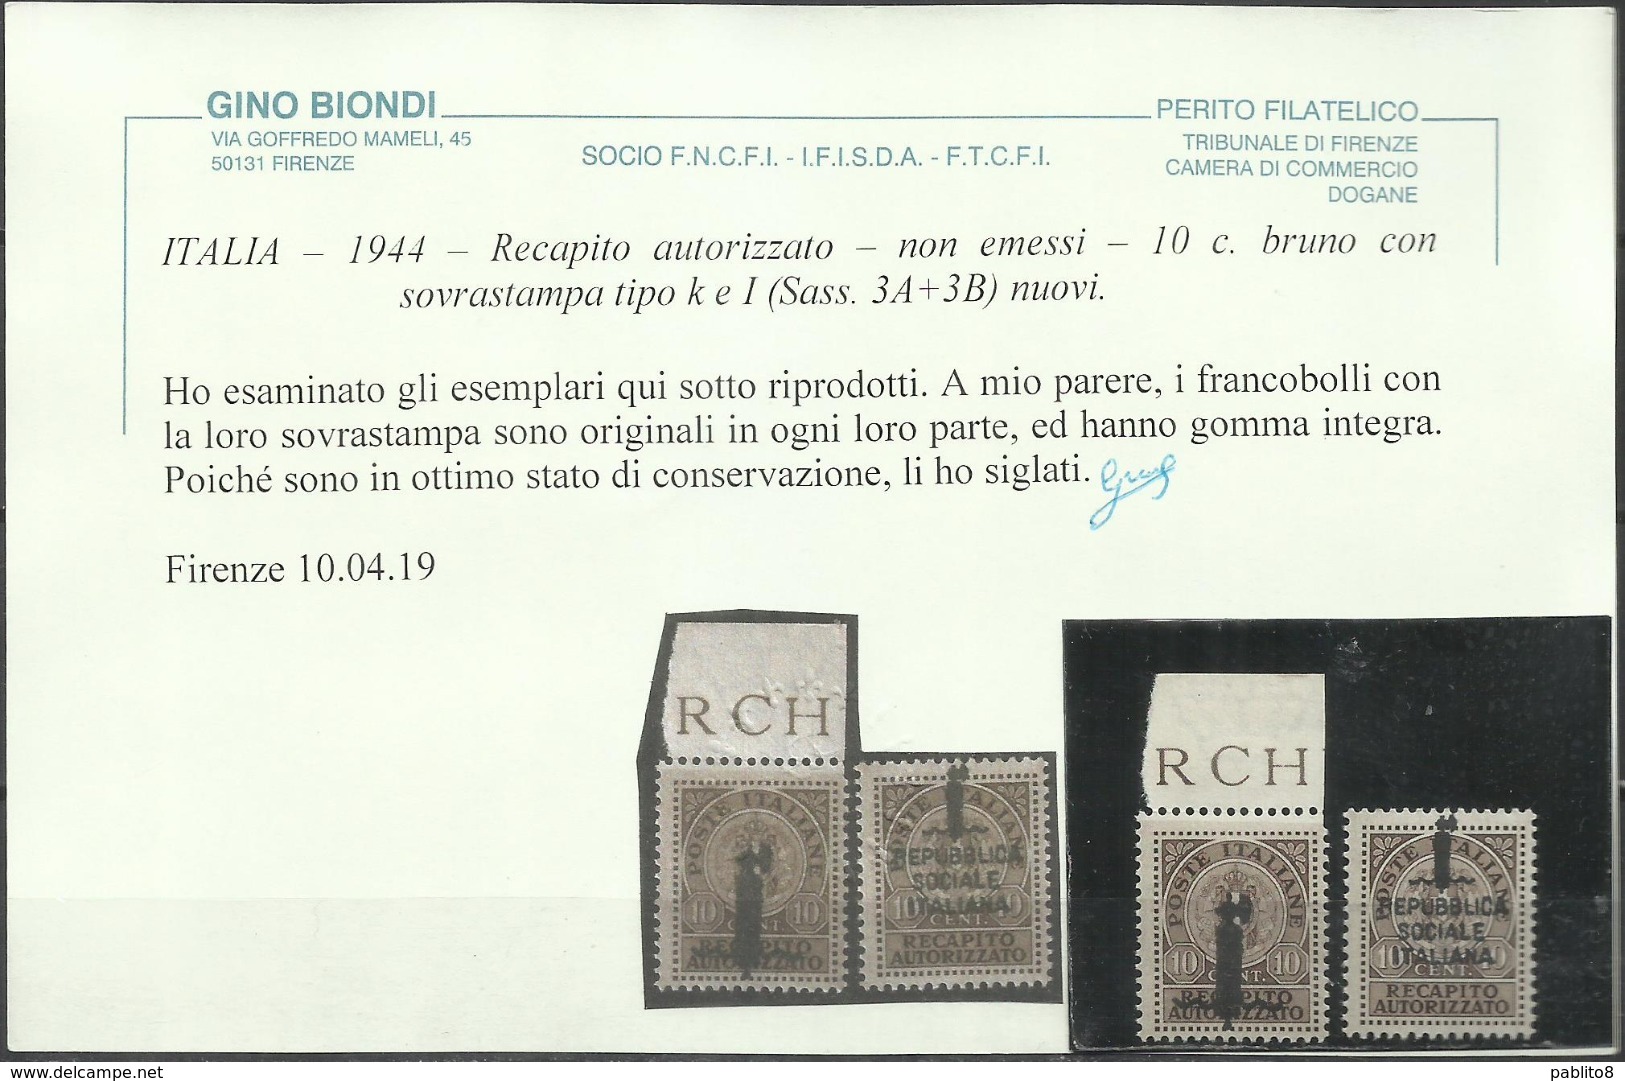 ITALIA REGNO ITALY KINGDOM 1944 RSI REPUBBLICA SOCIALE RECAPITO NON EMESSI SERIE COMPLETA FASCIO MNH CERTIFICATA - Mint/hinged